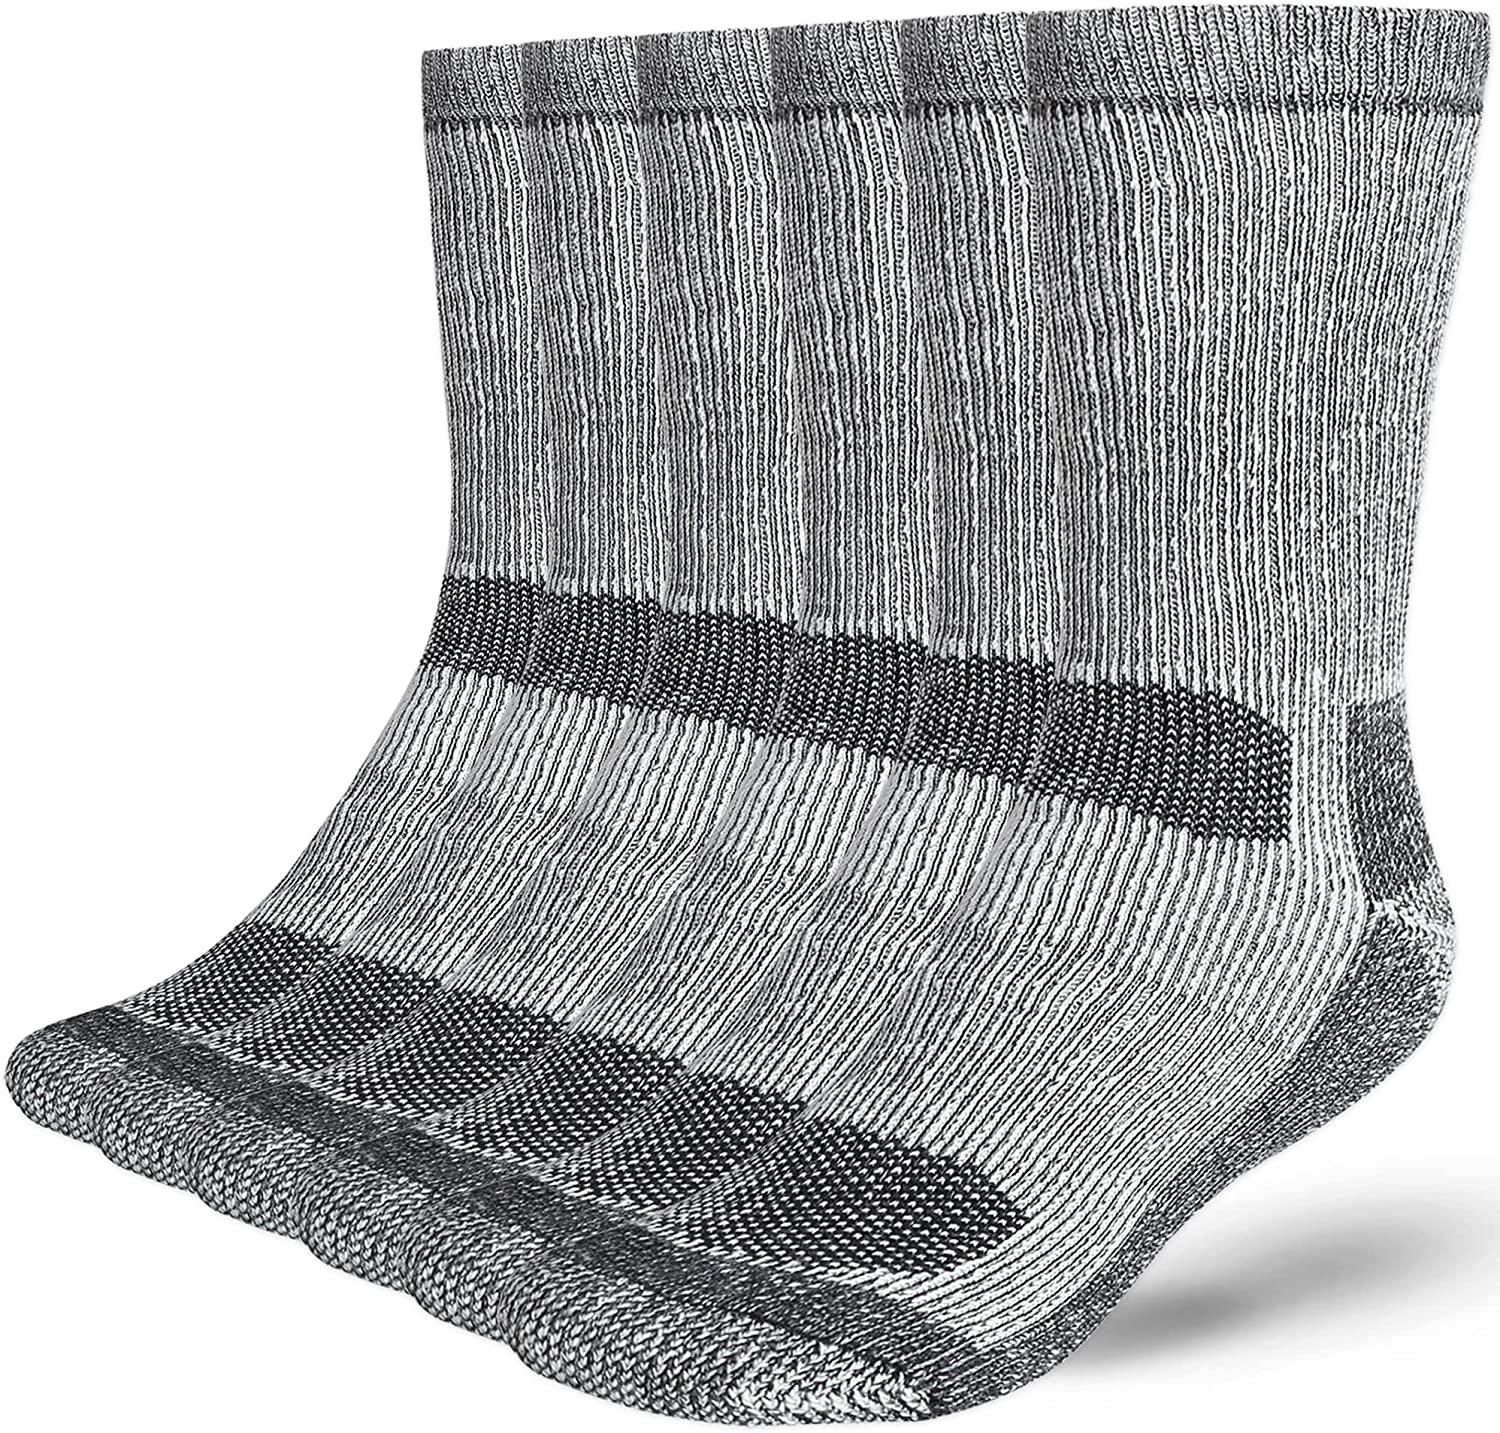 Merino Wool Winter Boot Socks 3 Pack for $8.45